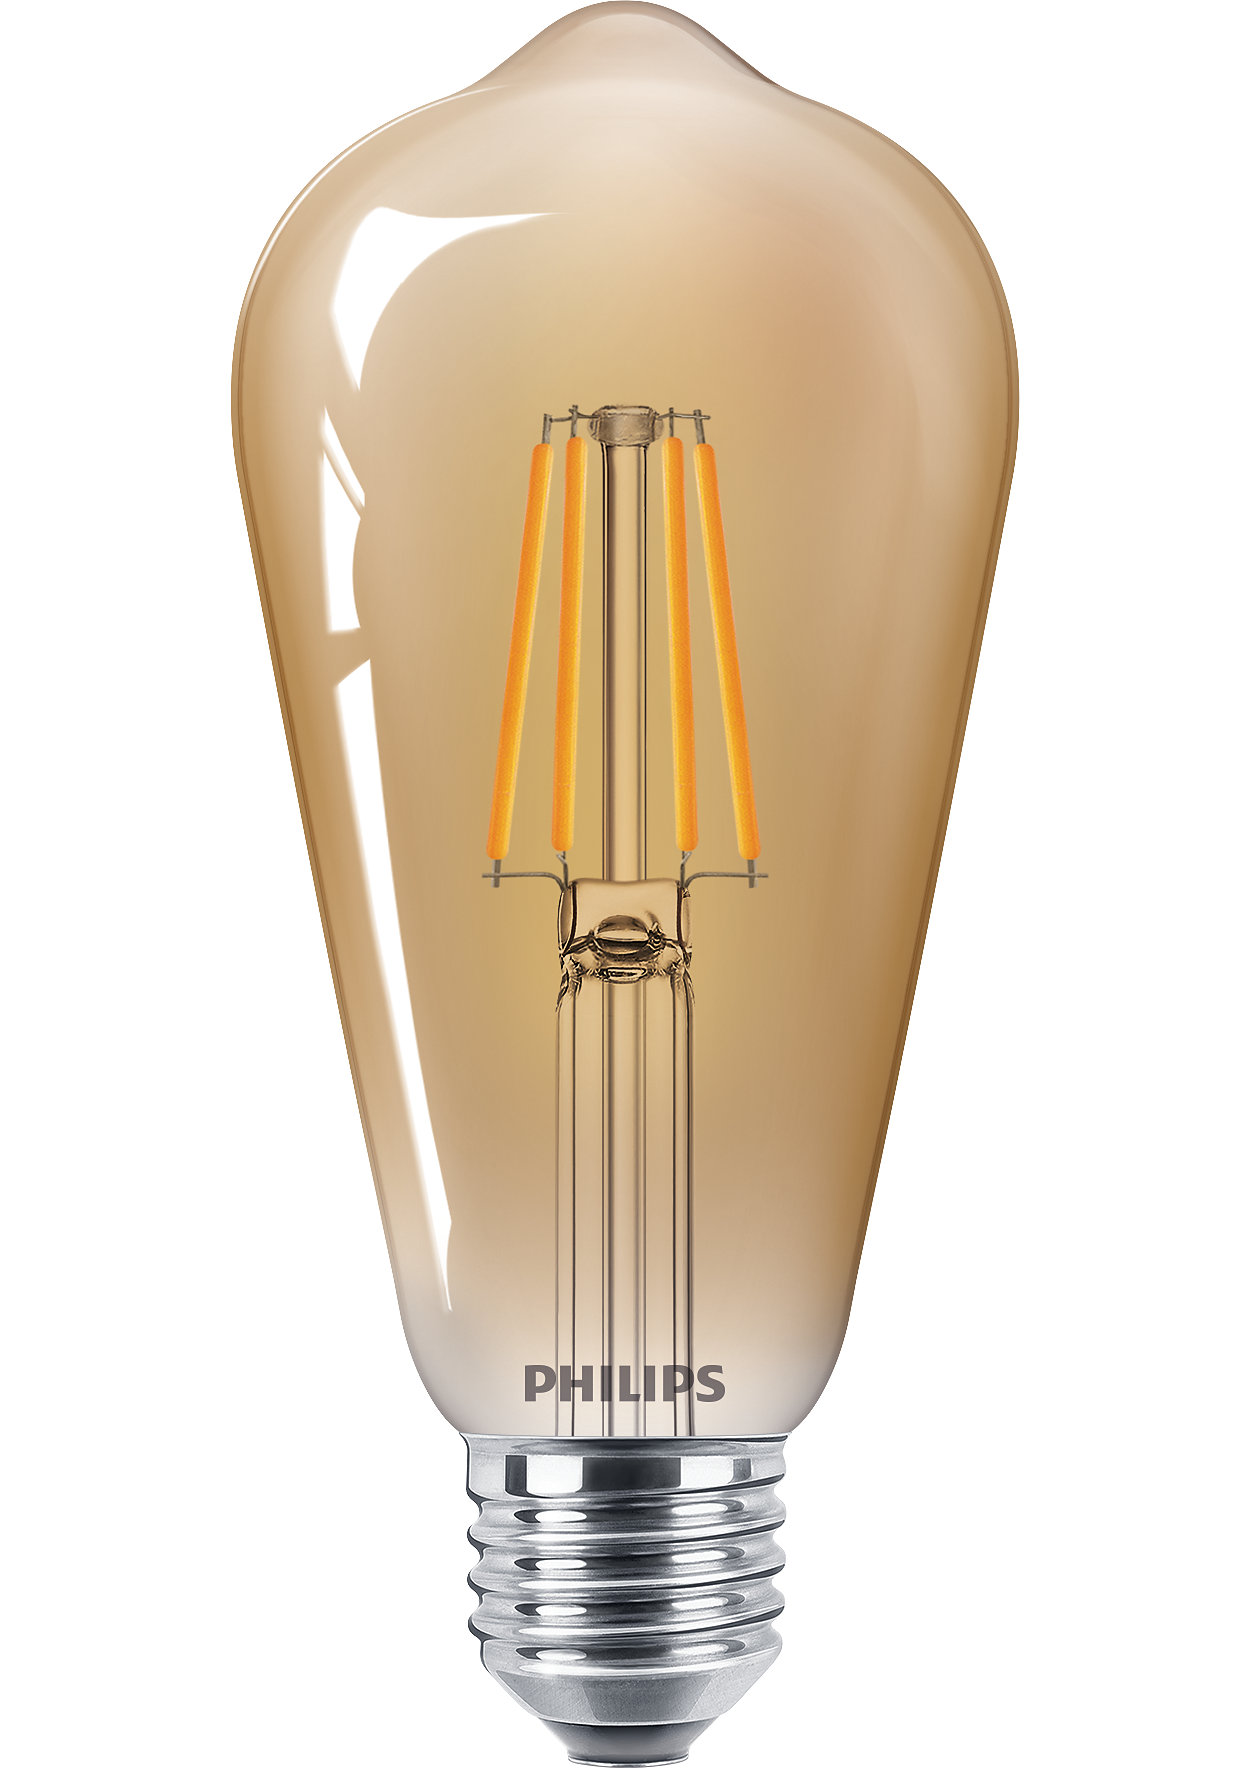 Lámparas LED clásicas de filamento para iluminación decorativa